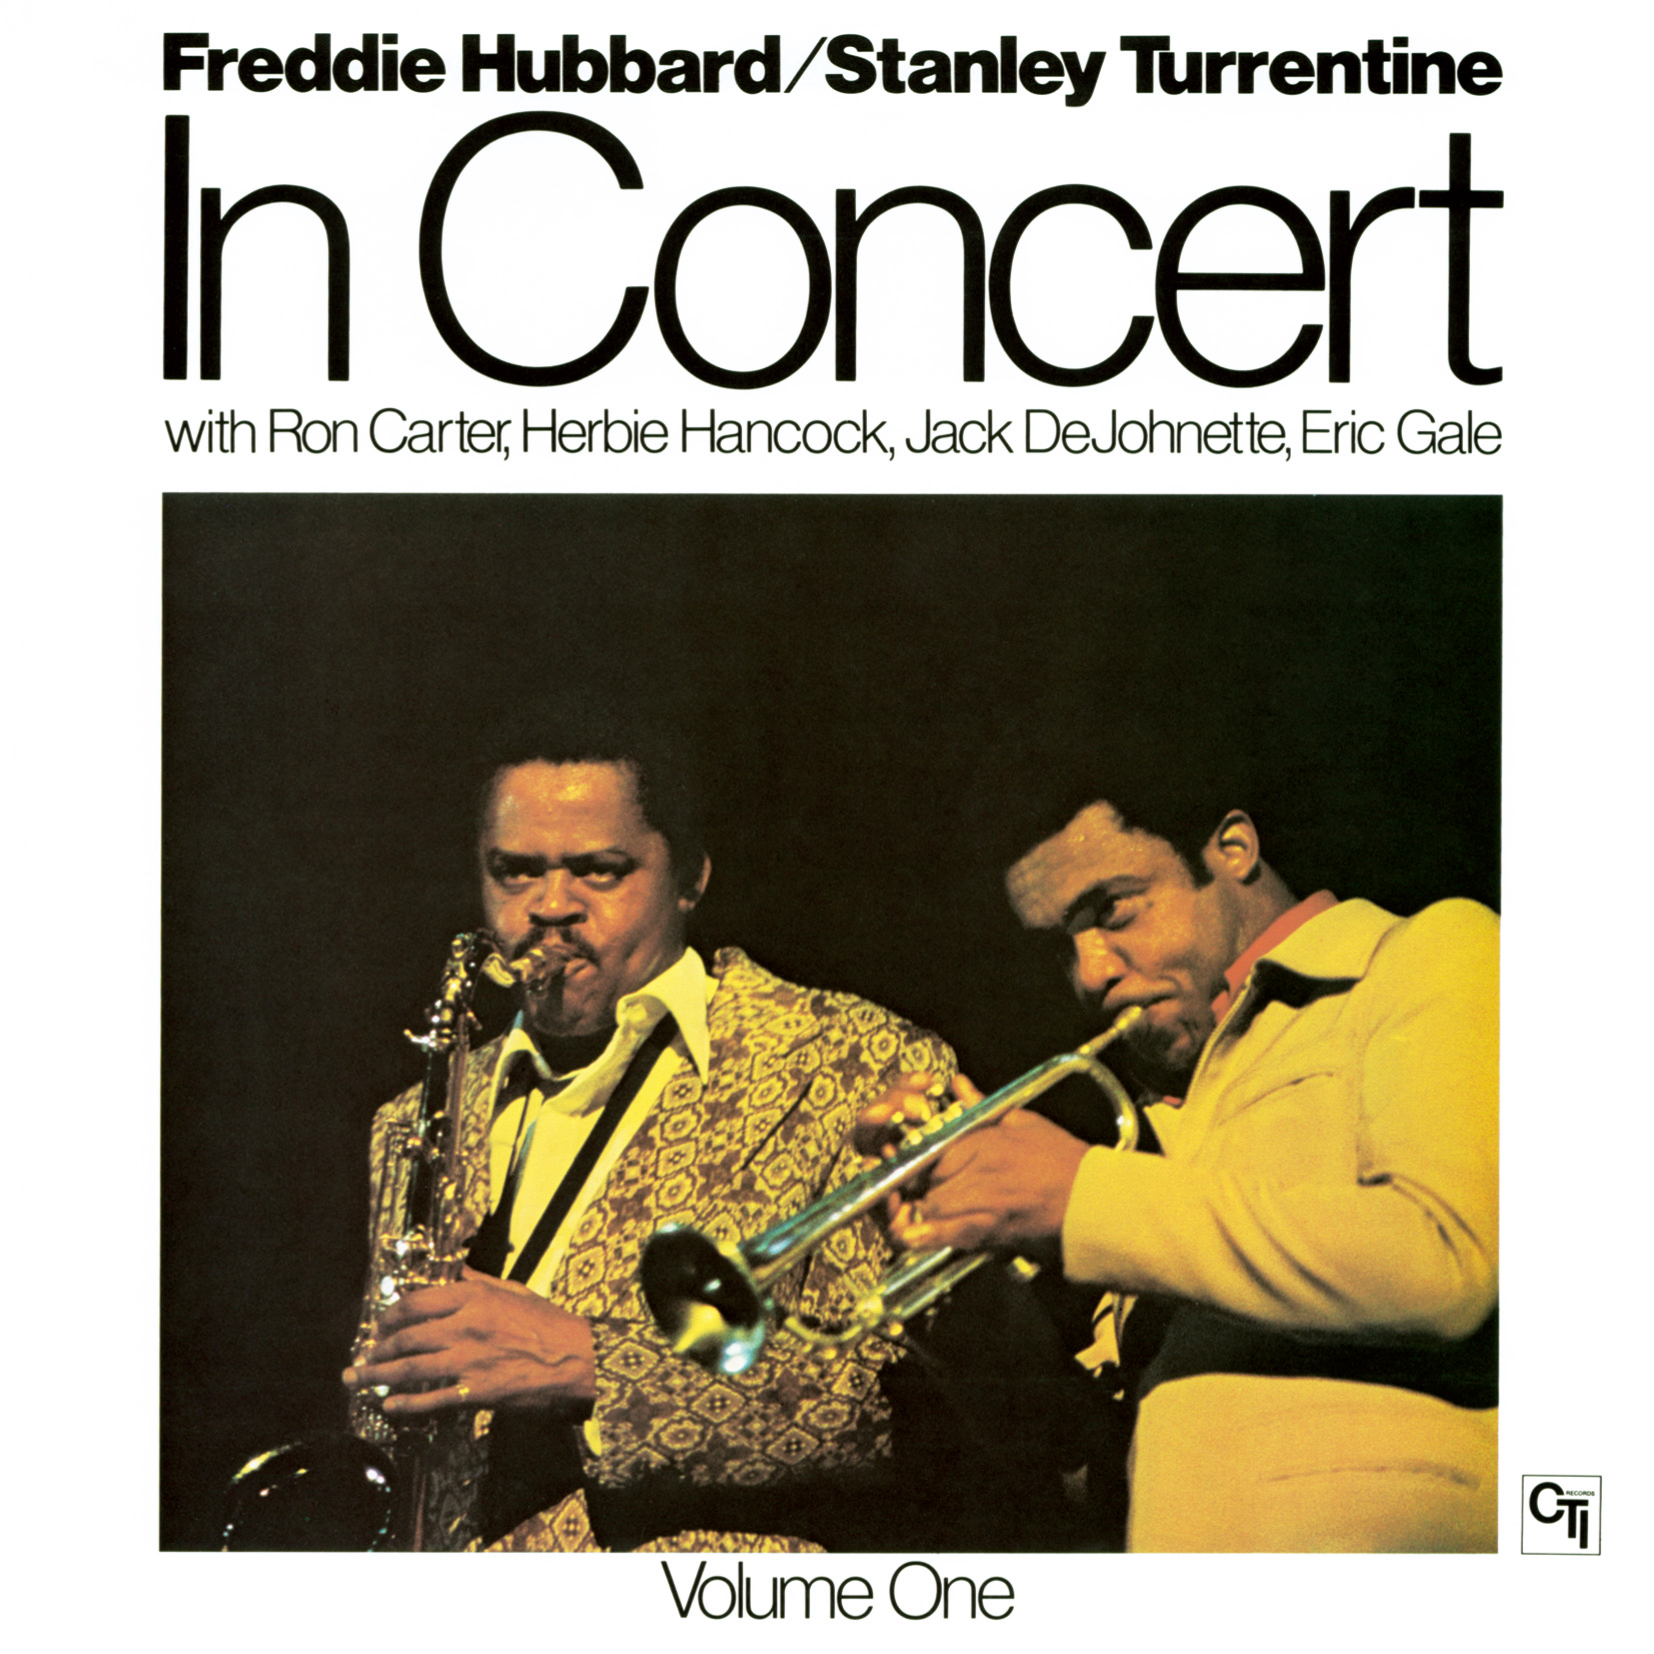 Freddie Hubbard & Stanley Turrentine - In Concert Vol.1 (Remastered) (1973/2017) [FLAC 24bit/192kHz]